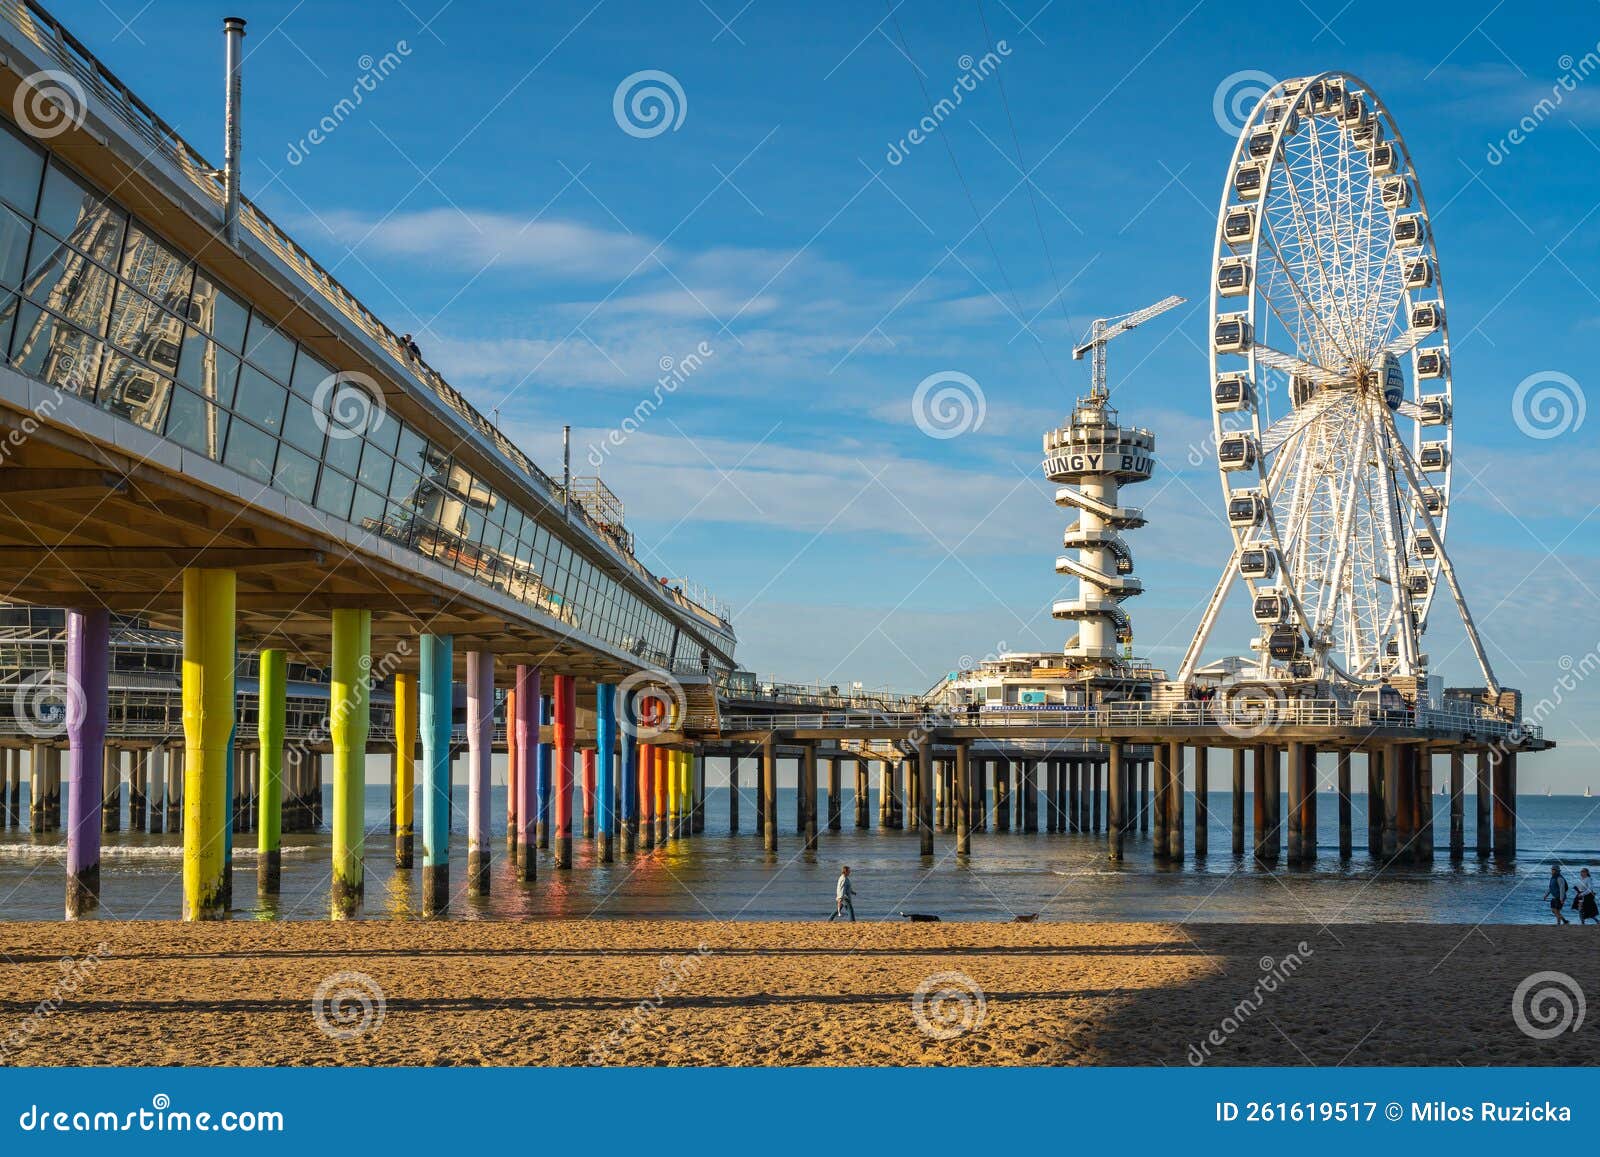 Famous Ferris Wheel Skyview De Pier at the Scheveningen Beach, a